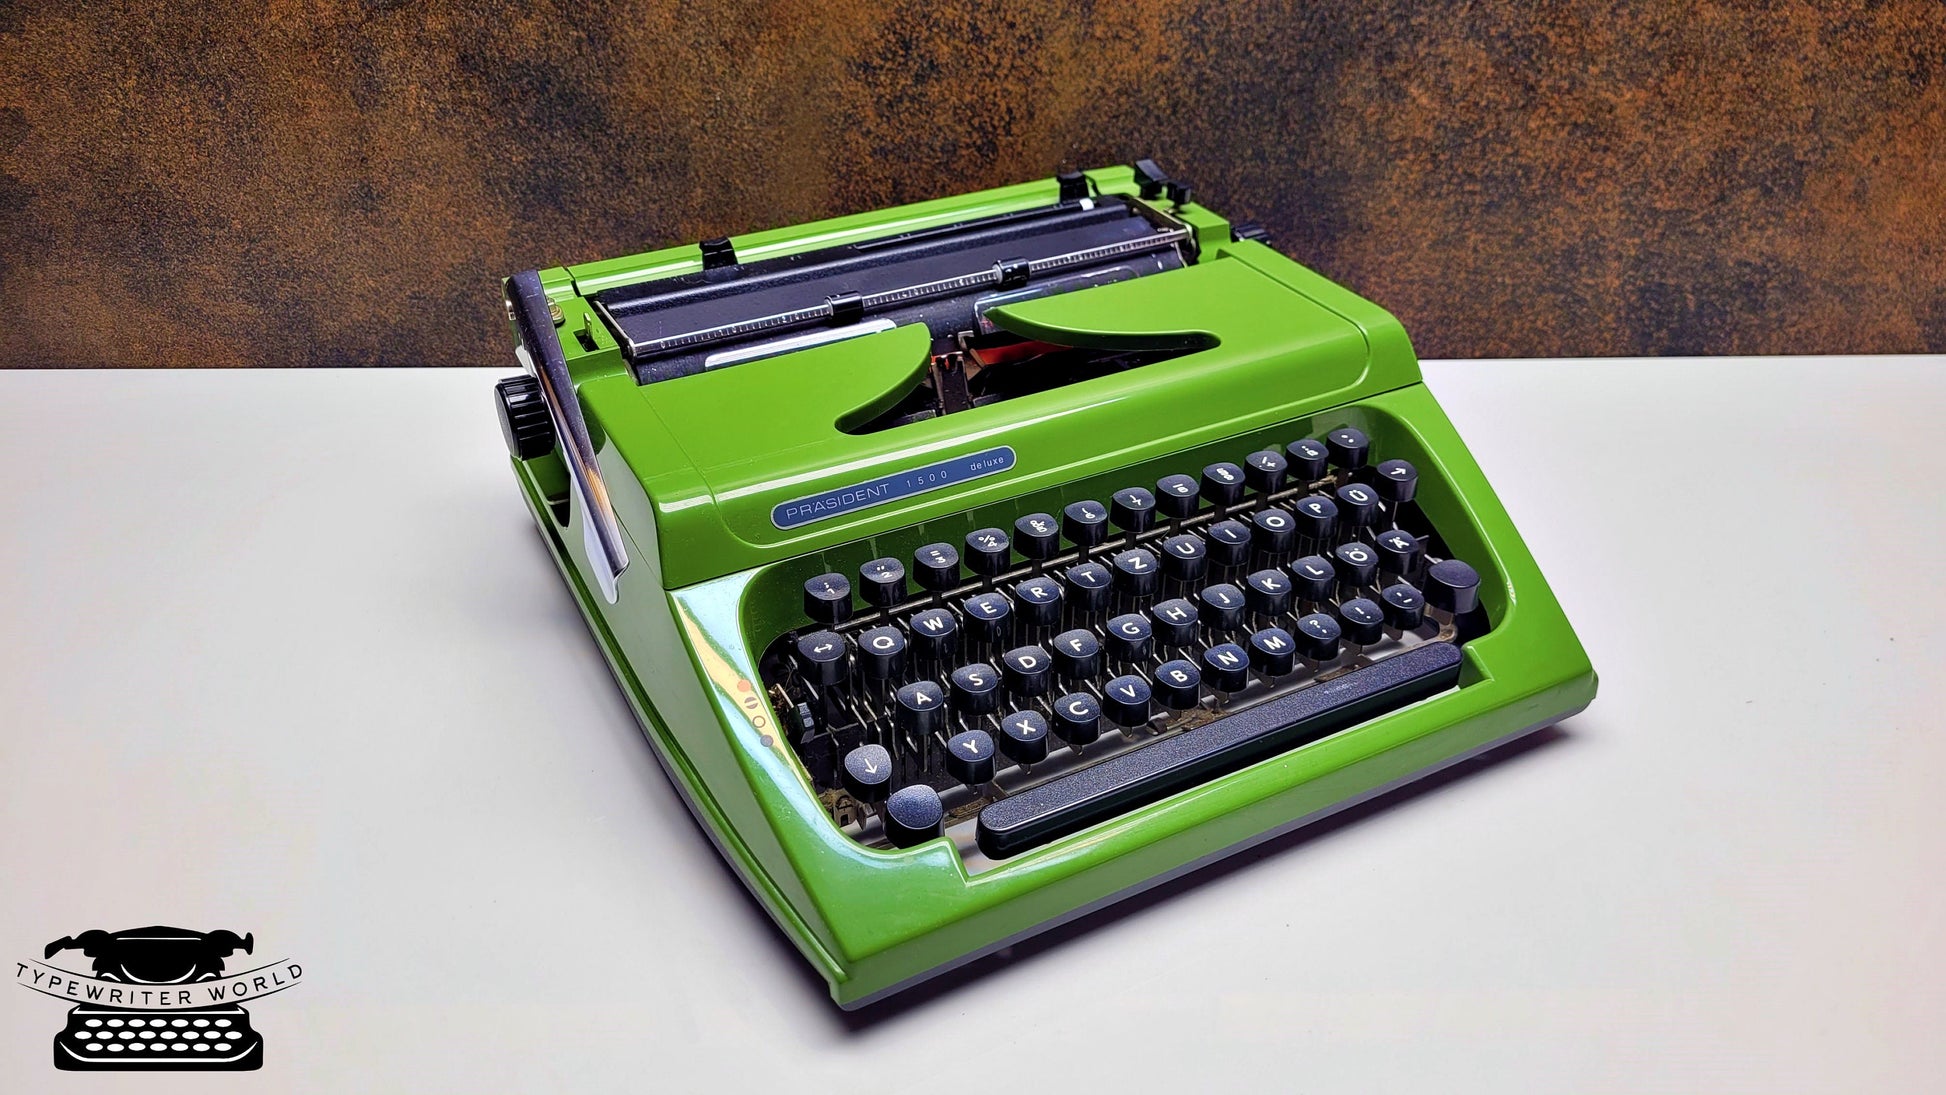 Prasident Typewriter | Green Typewriter | Leather Bag Typewriter | Old Typewriter,typewriter working